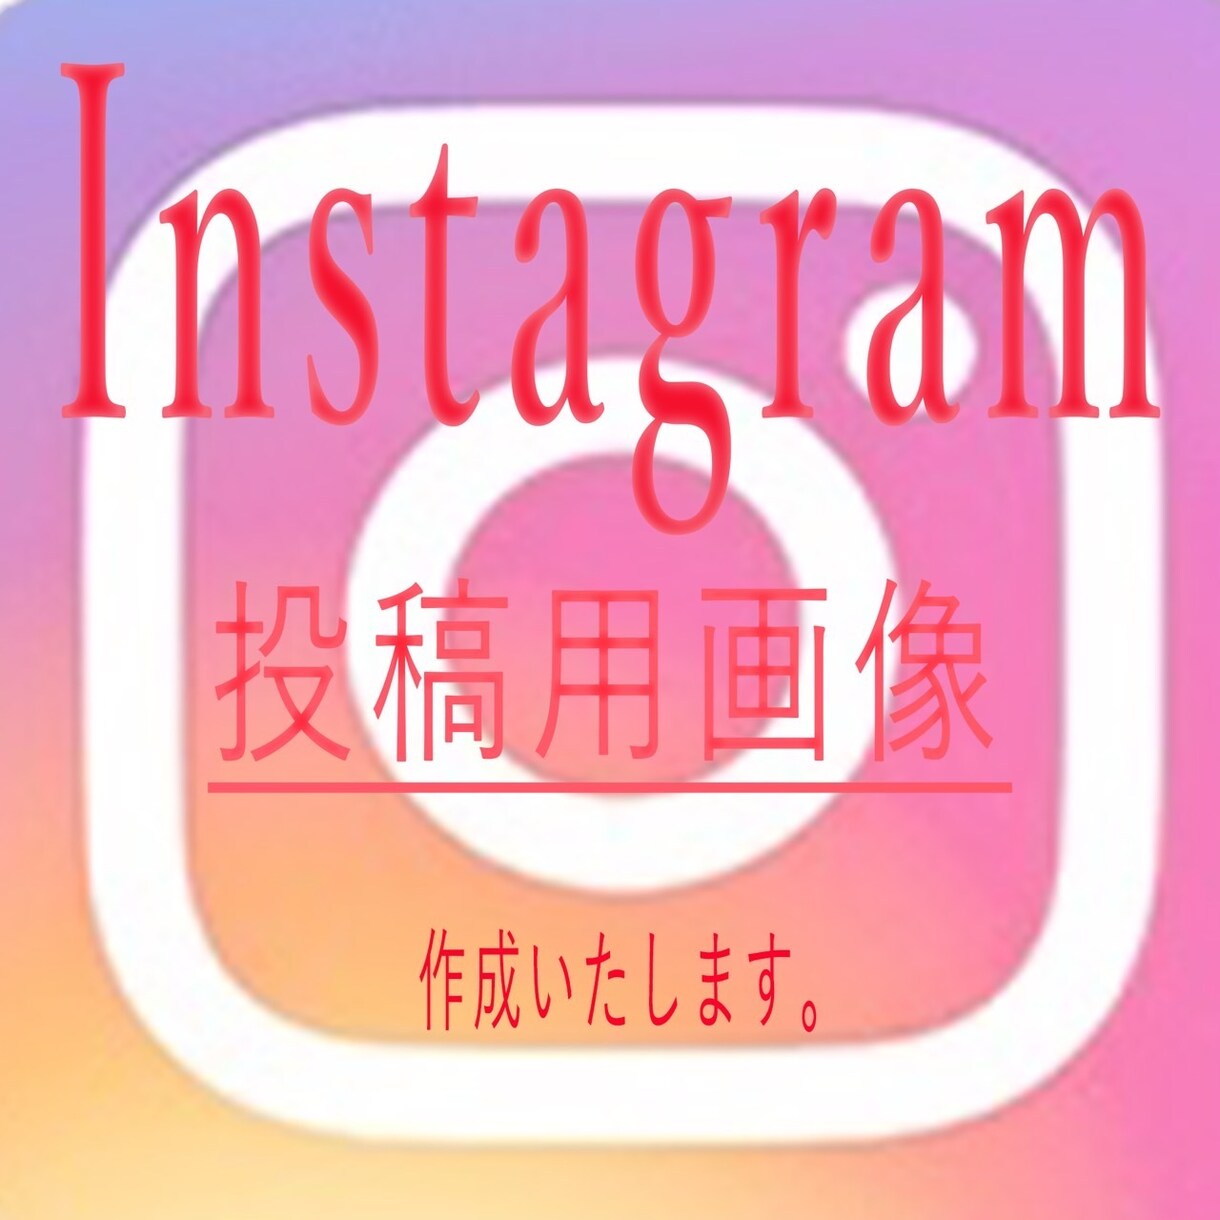 Instagramの投稿画像作ります 実績が10件になるまで３枚1000円で提供します。 イメージ1